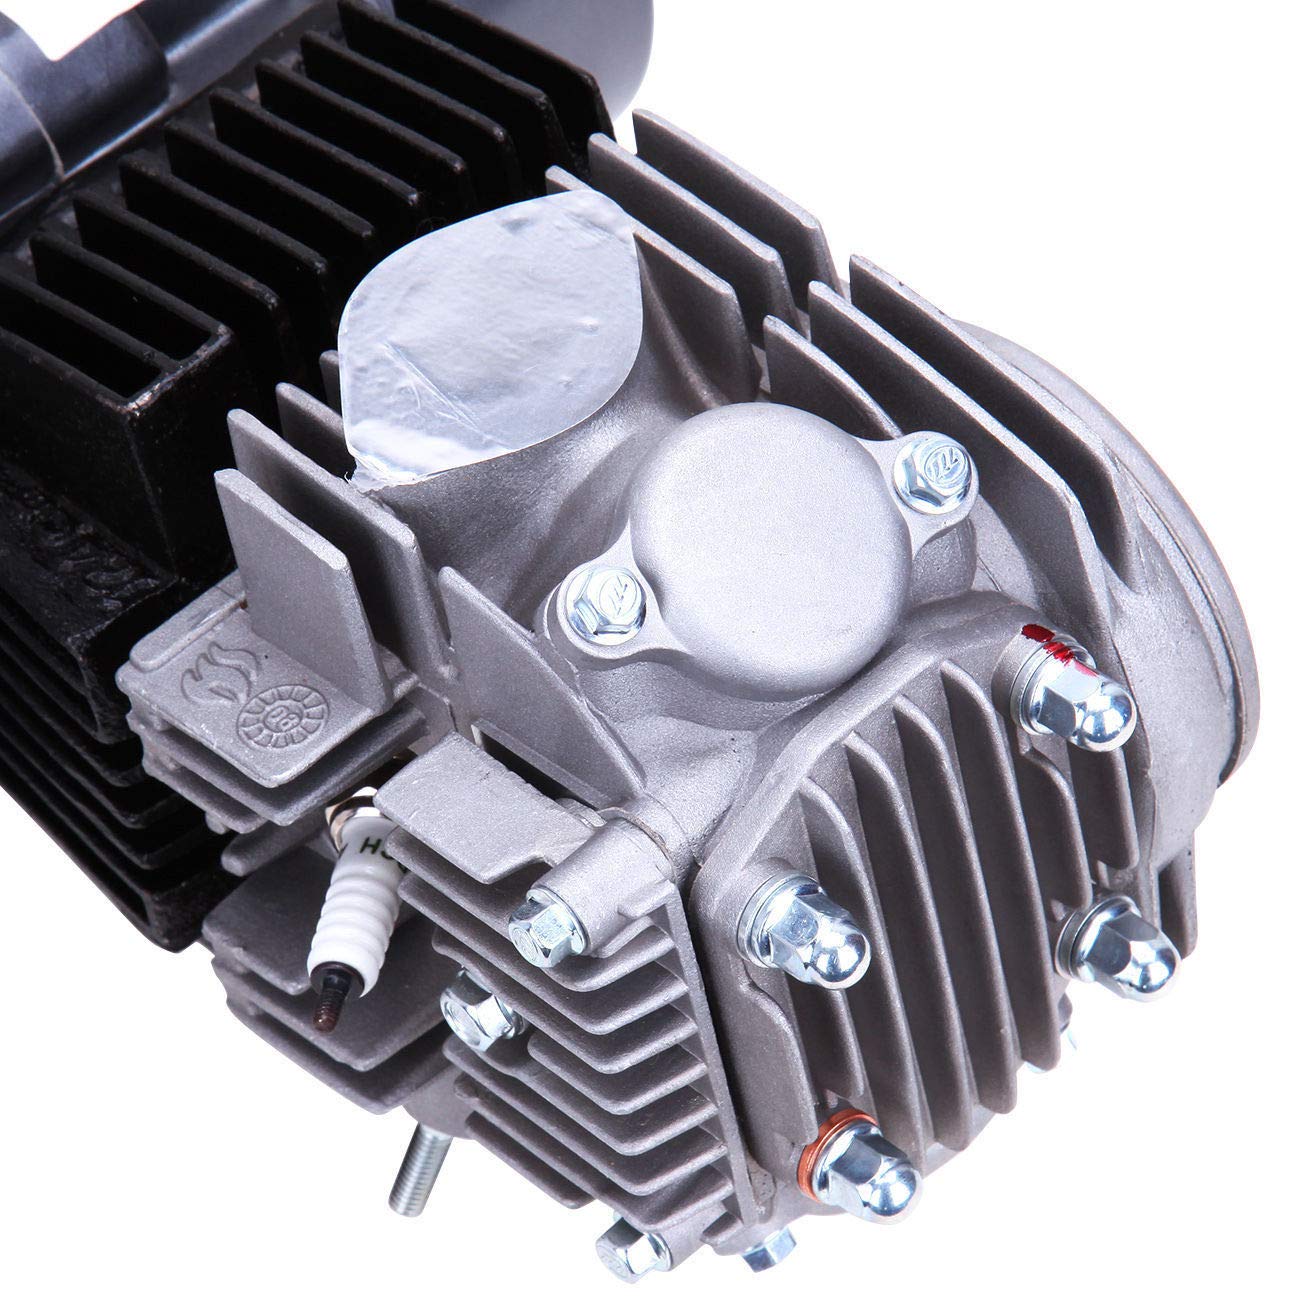 125 cc 4 tempi ATV motore monocilindrico Pull Start carburatore testa filtro aria Dirtbike frizione manuale